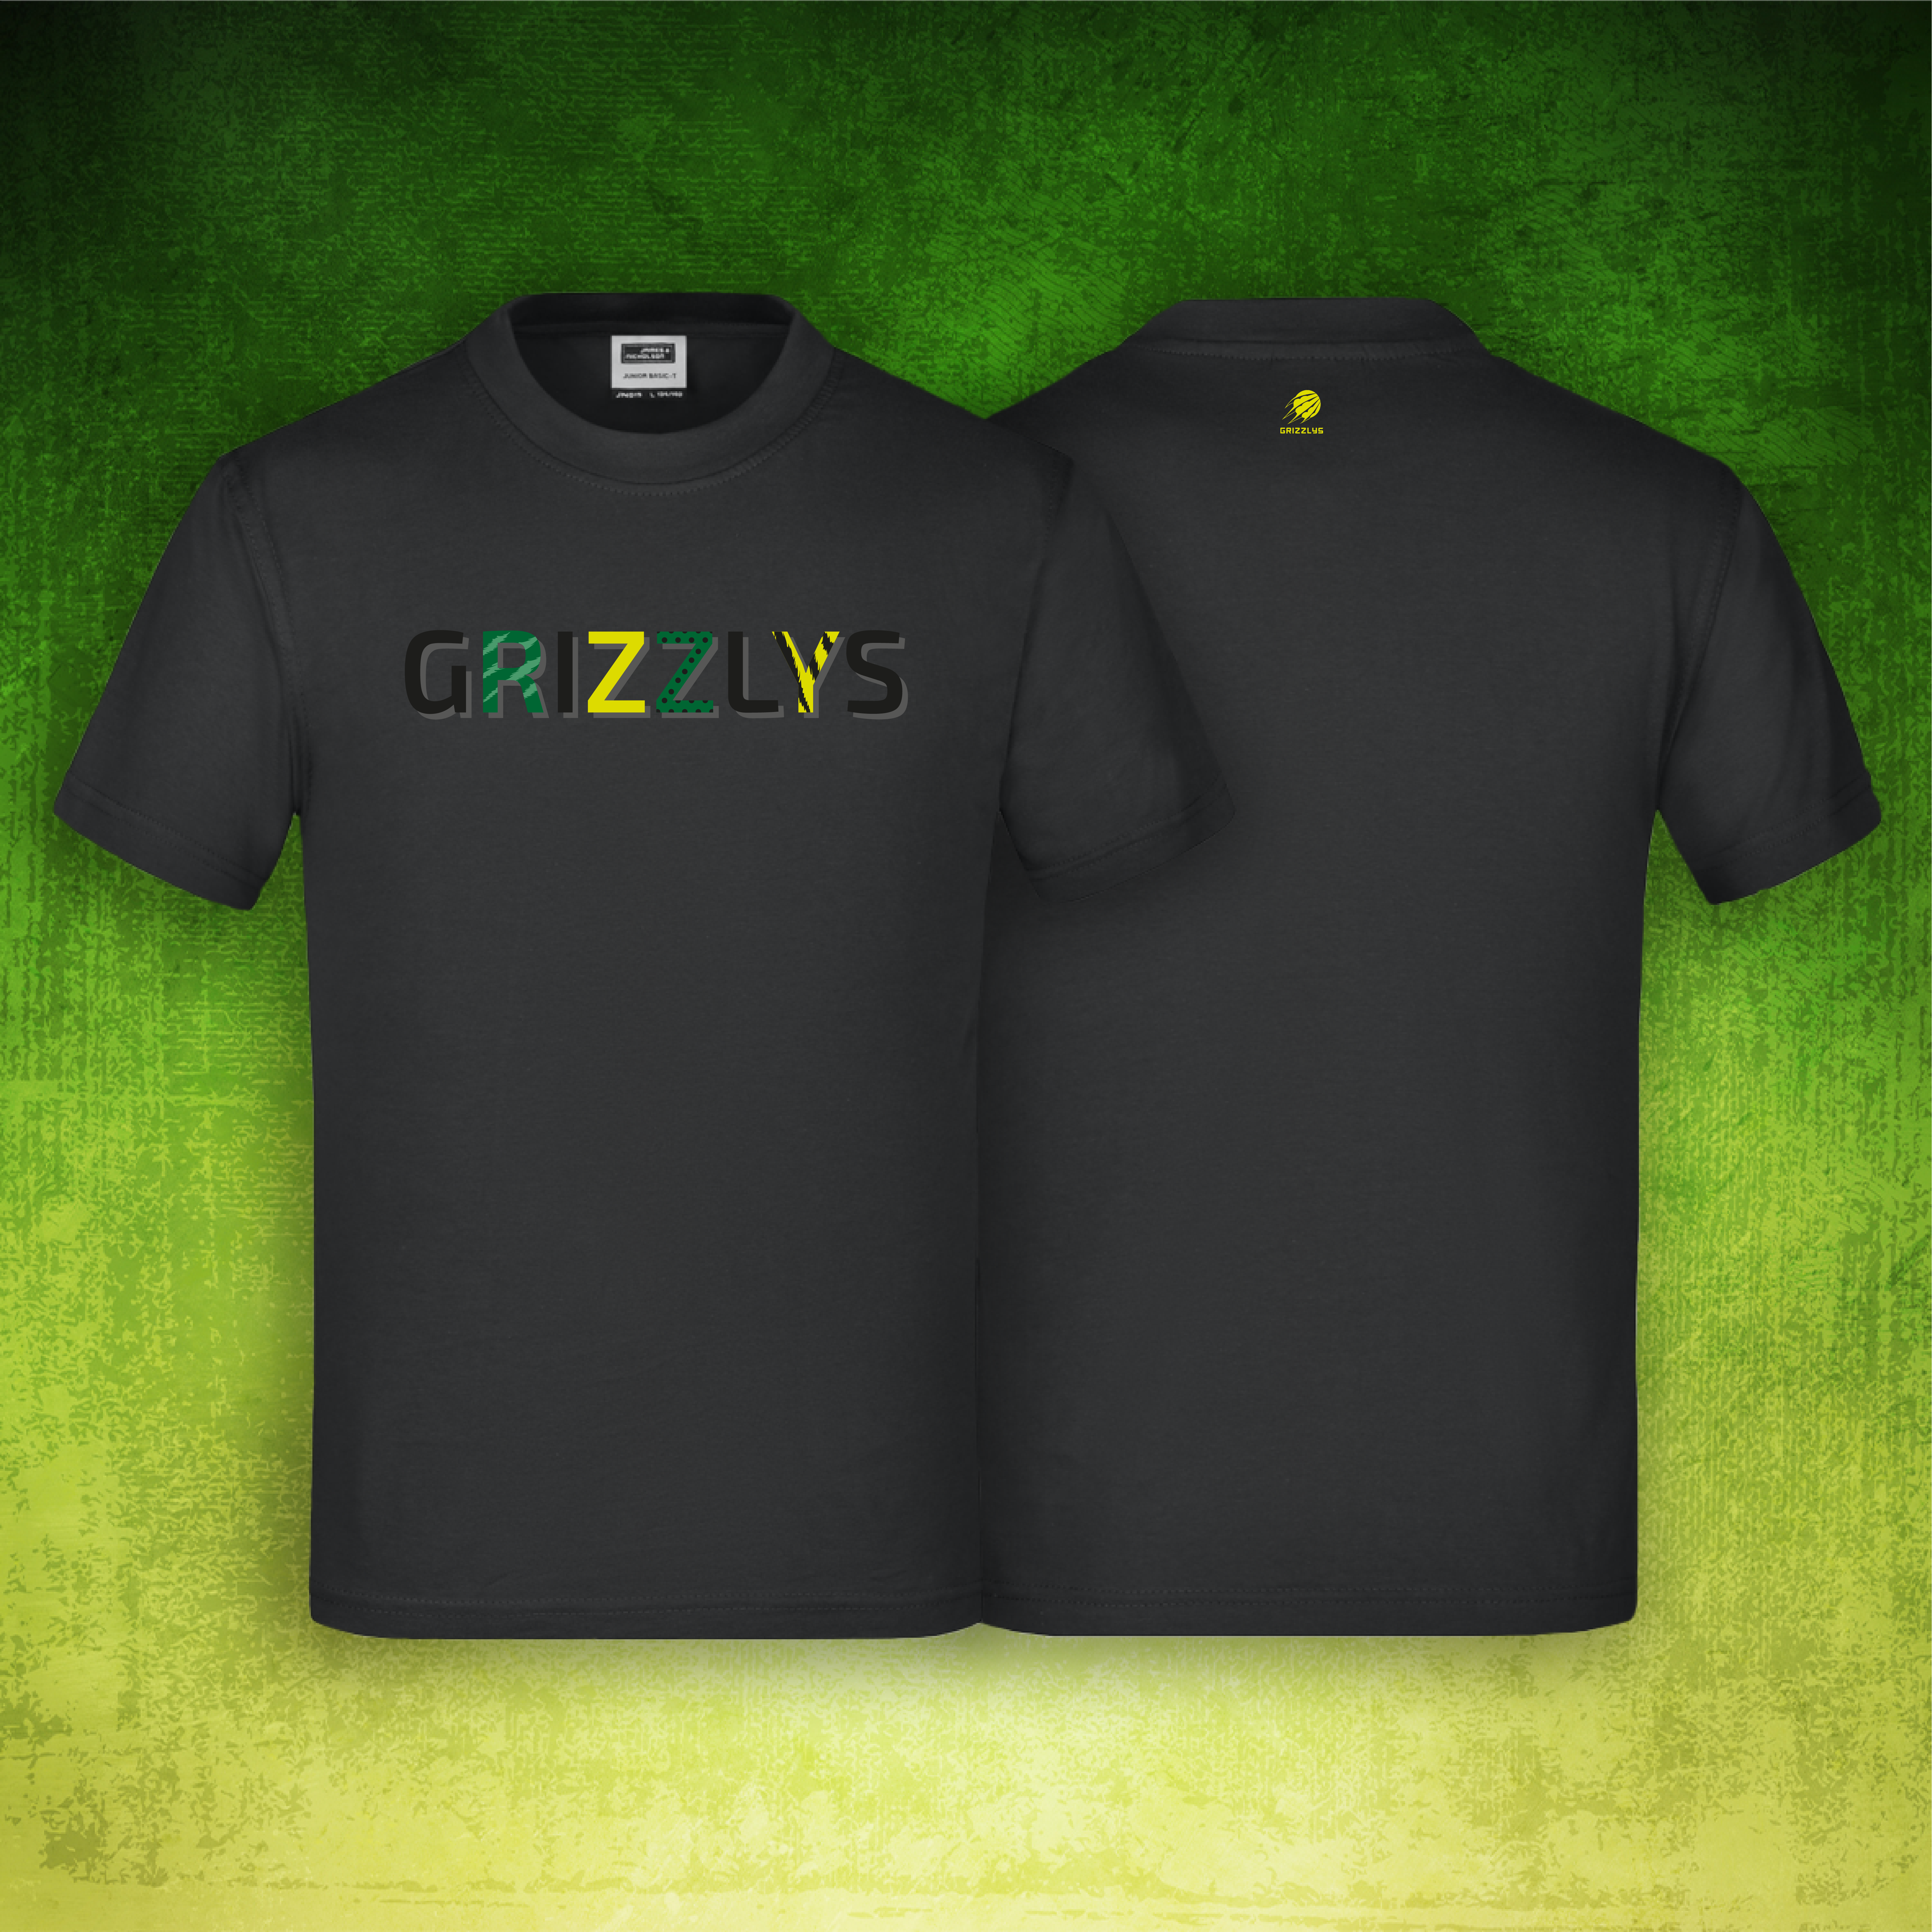 Kids Premium Shirt Schwarz Grizzlys Schriftzug